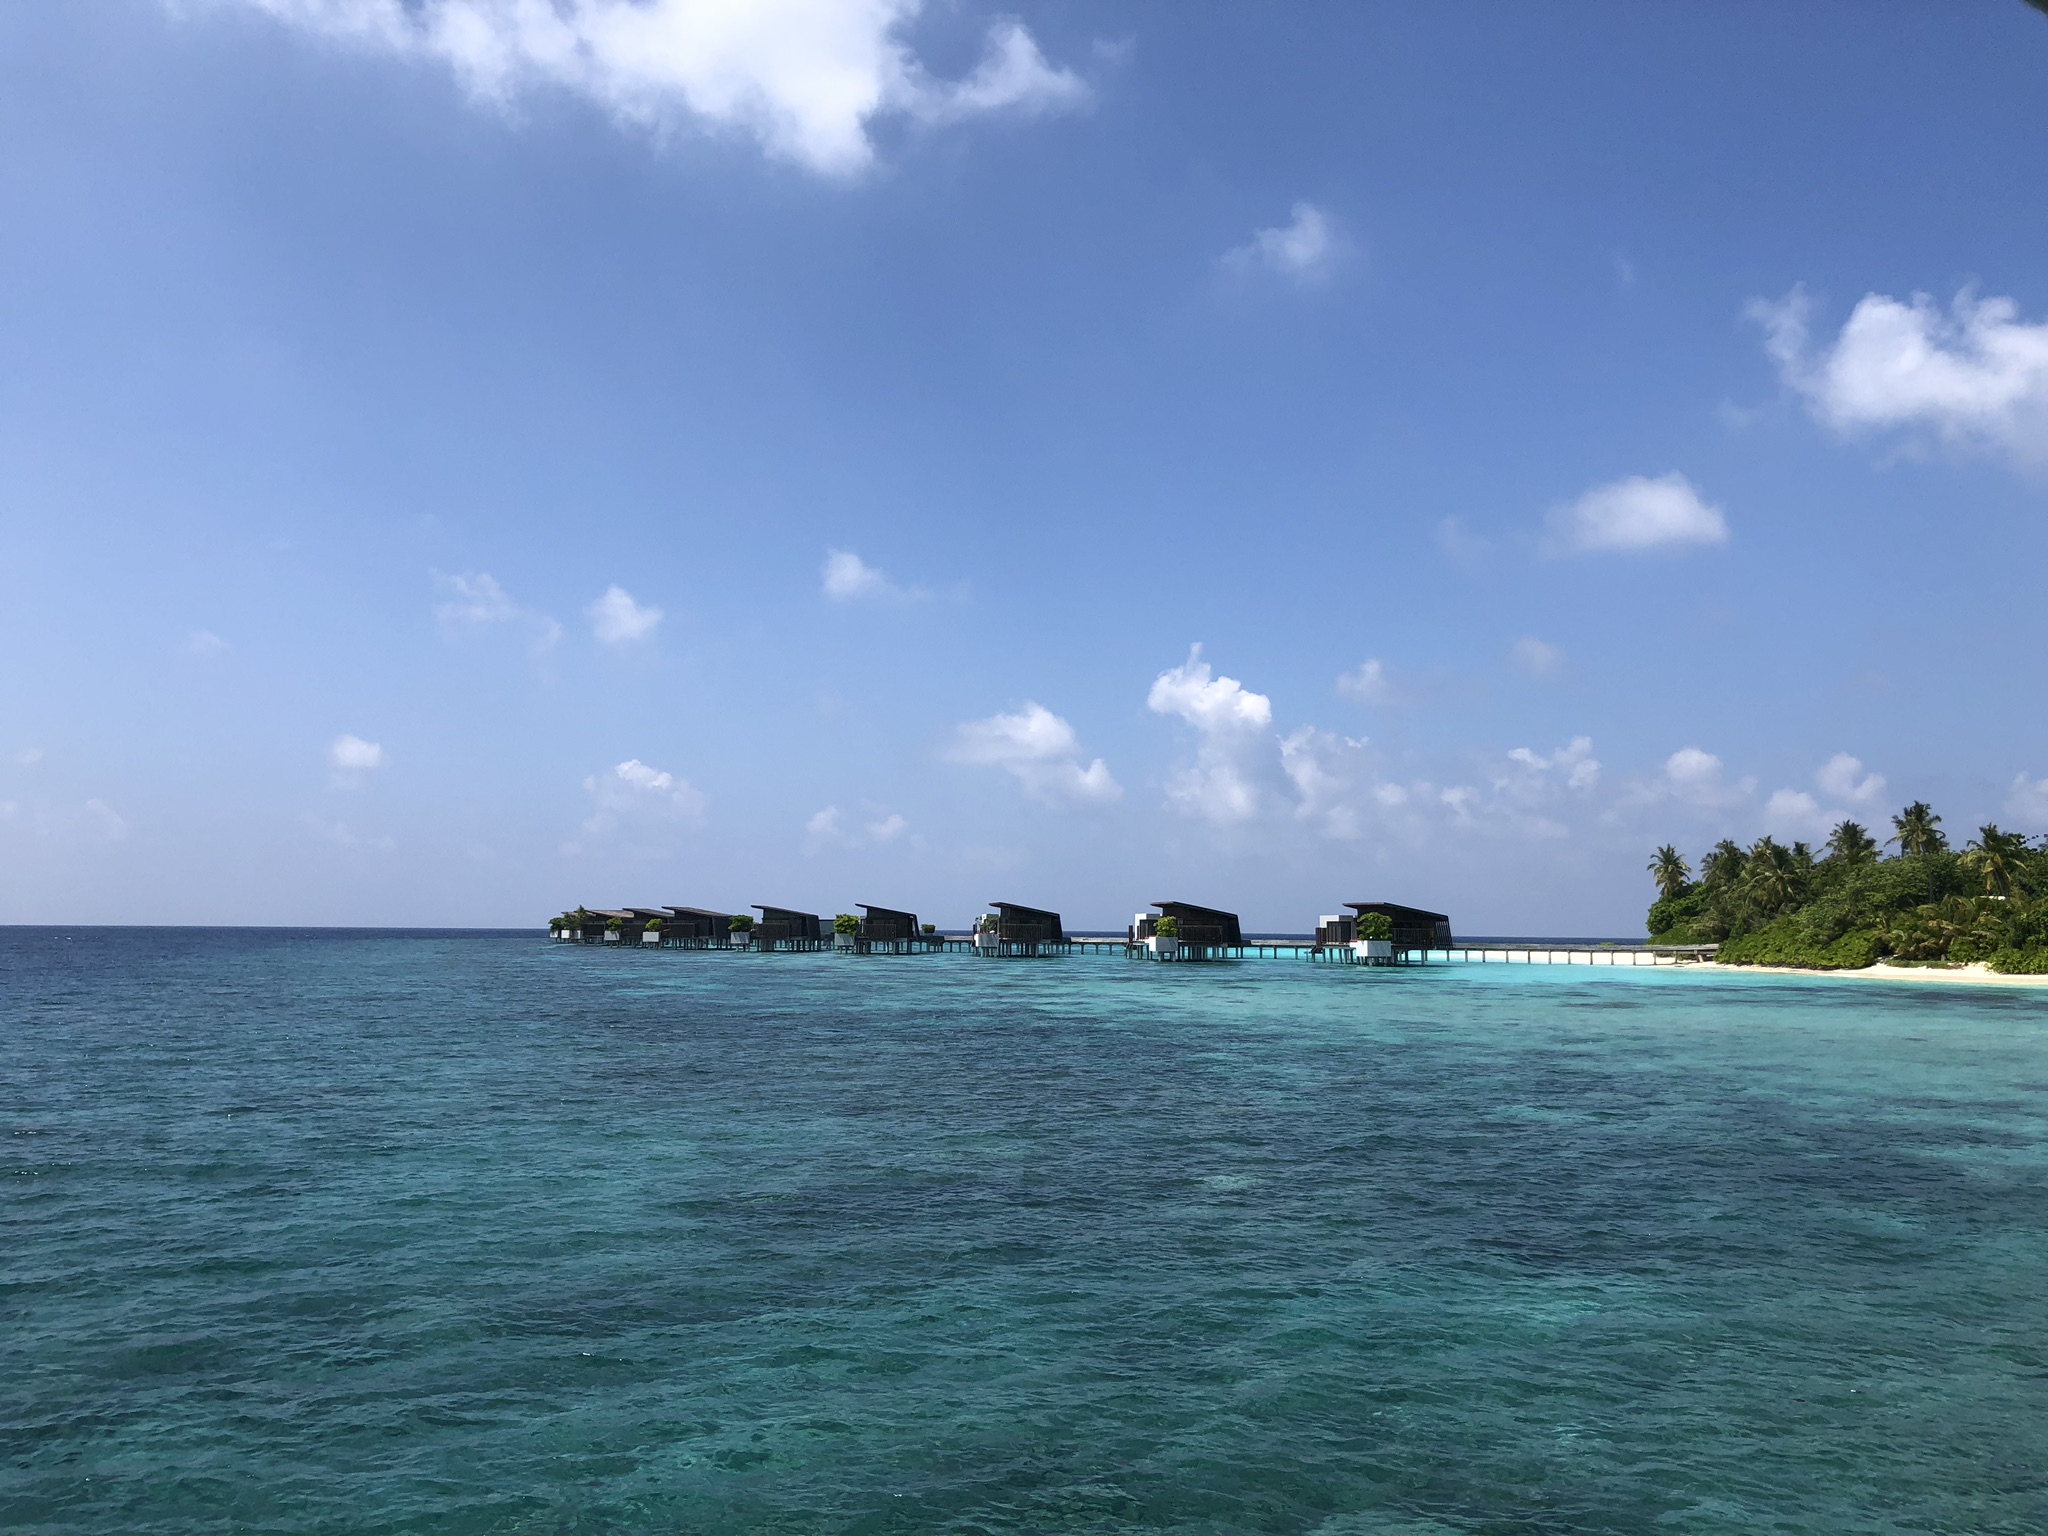 Park Hyatt Maldives